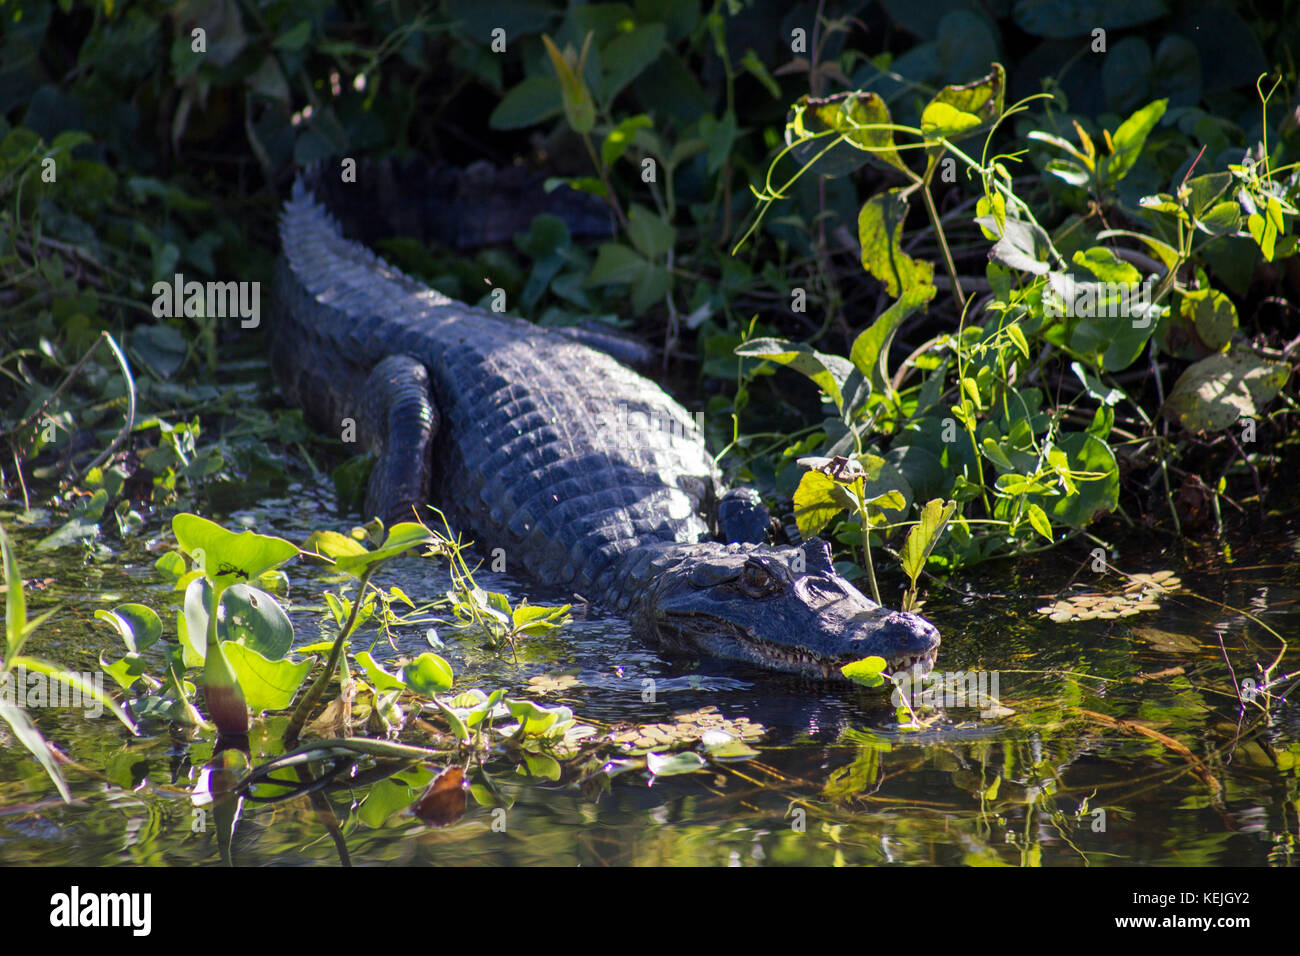 Alligator au sud du Pantanal, Fazenda San Franscisco, ville de Miranda, Mato Grosso do Sul - Brésil Banque D'Images